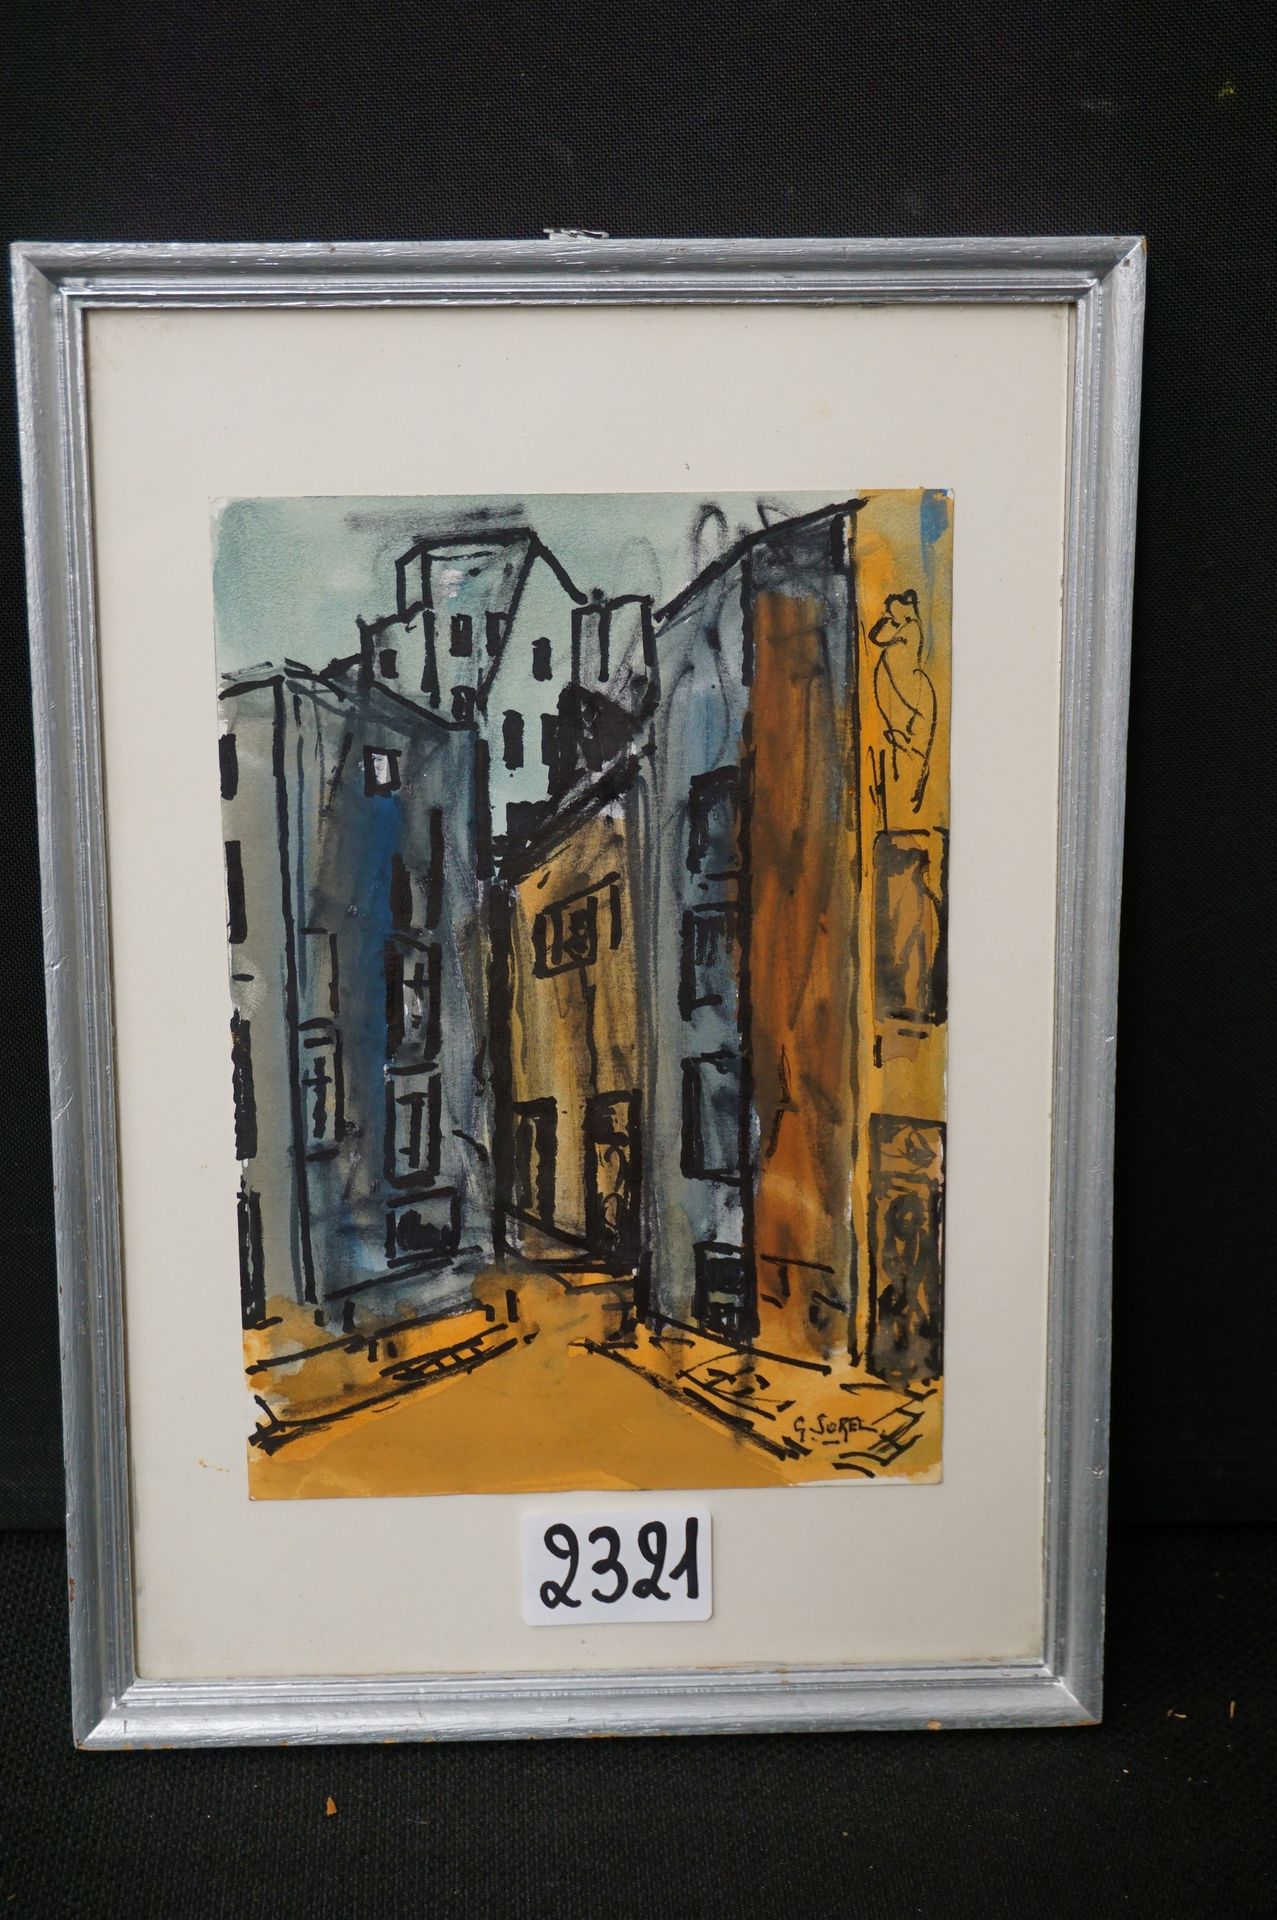 GUSTAAF SOREL (1905 - 1981) "Façades" - Aquarelle - Signé - 21 x 14 cm